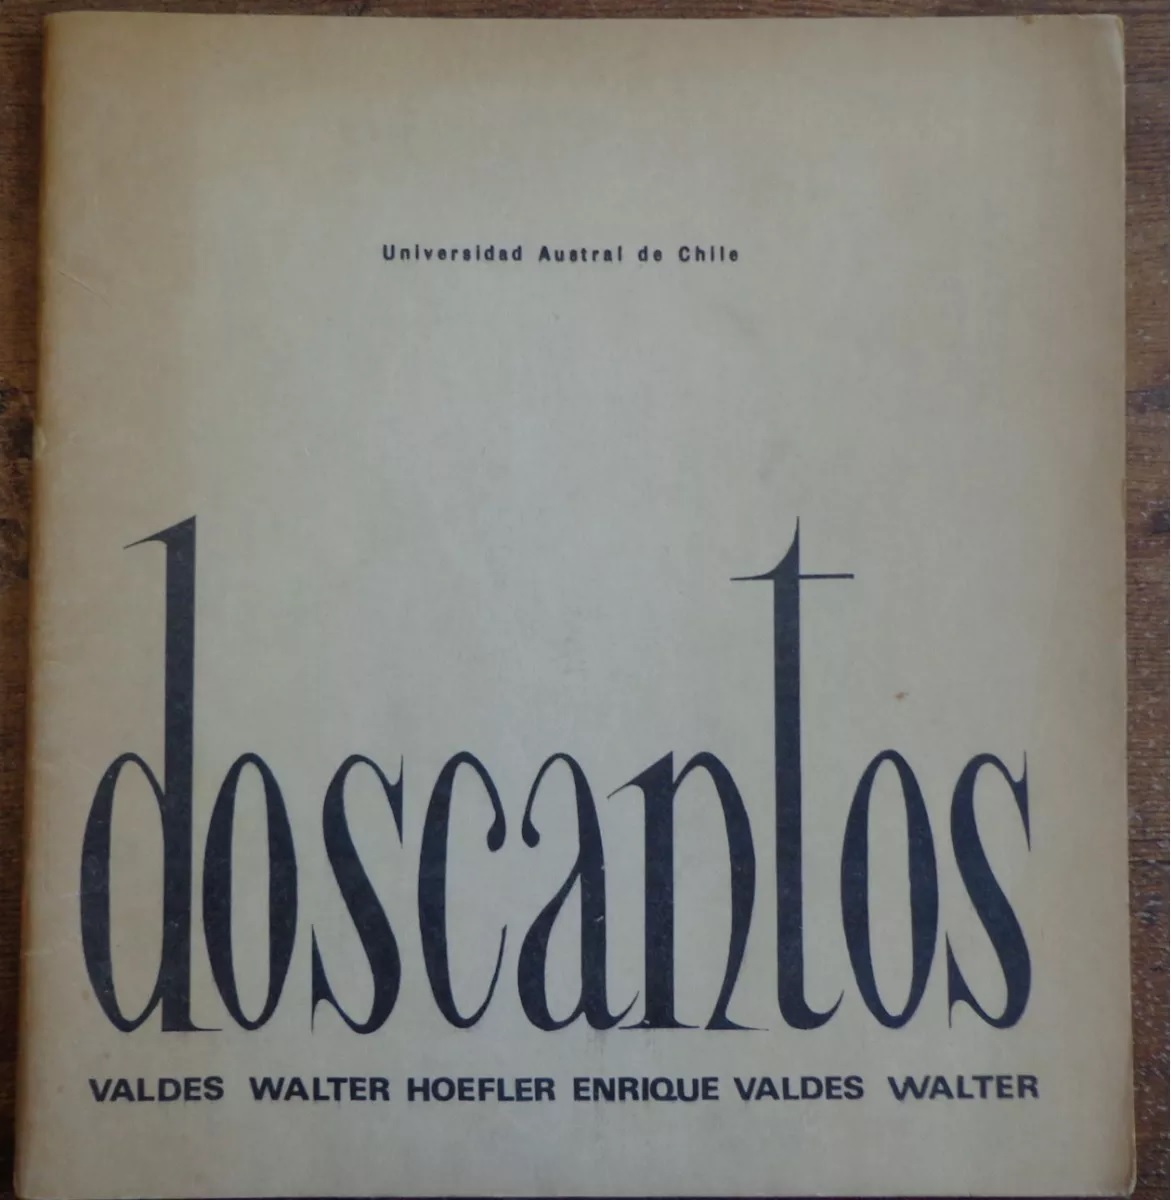 Walter Hoefler, Enrique Valdes. Dos cantos 